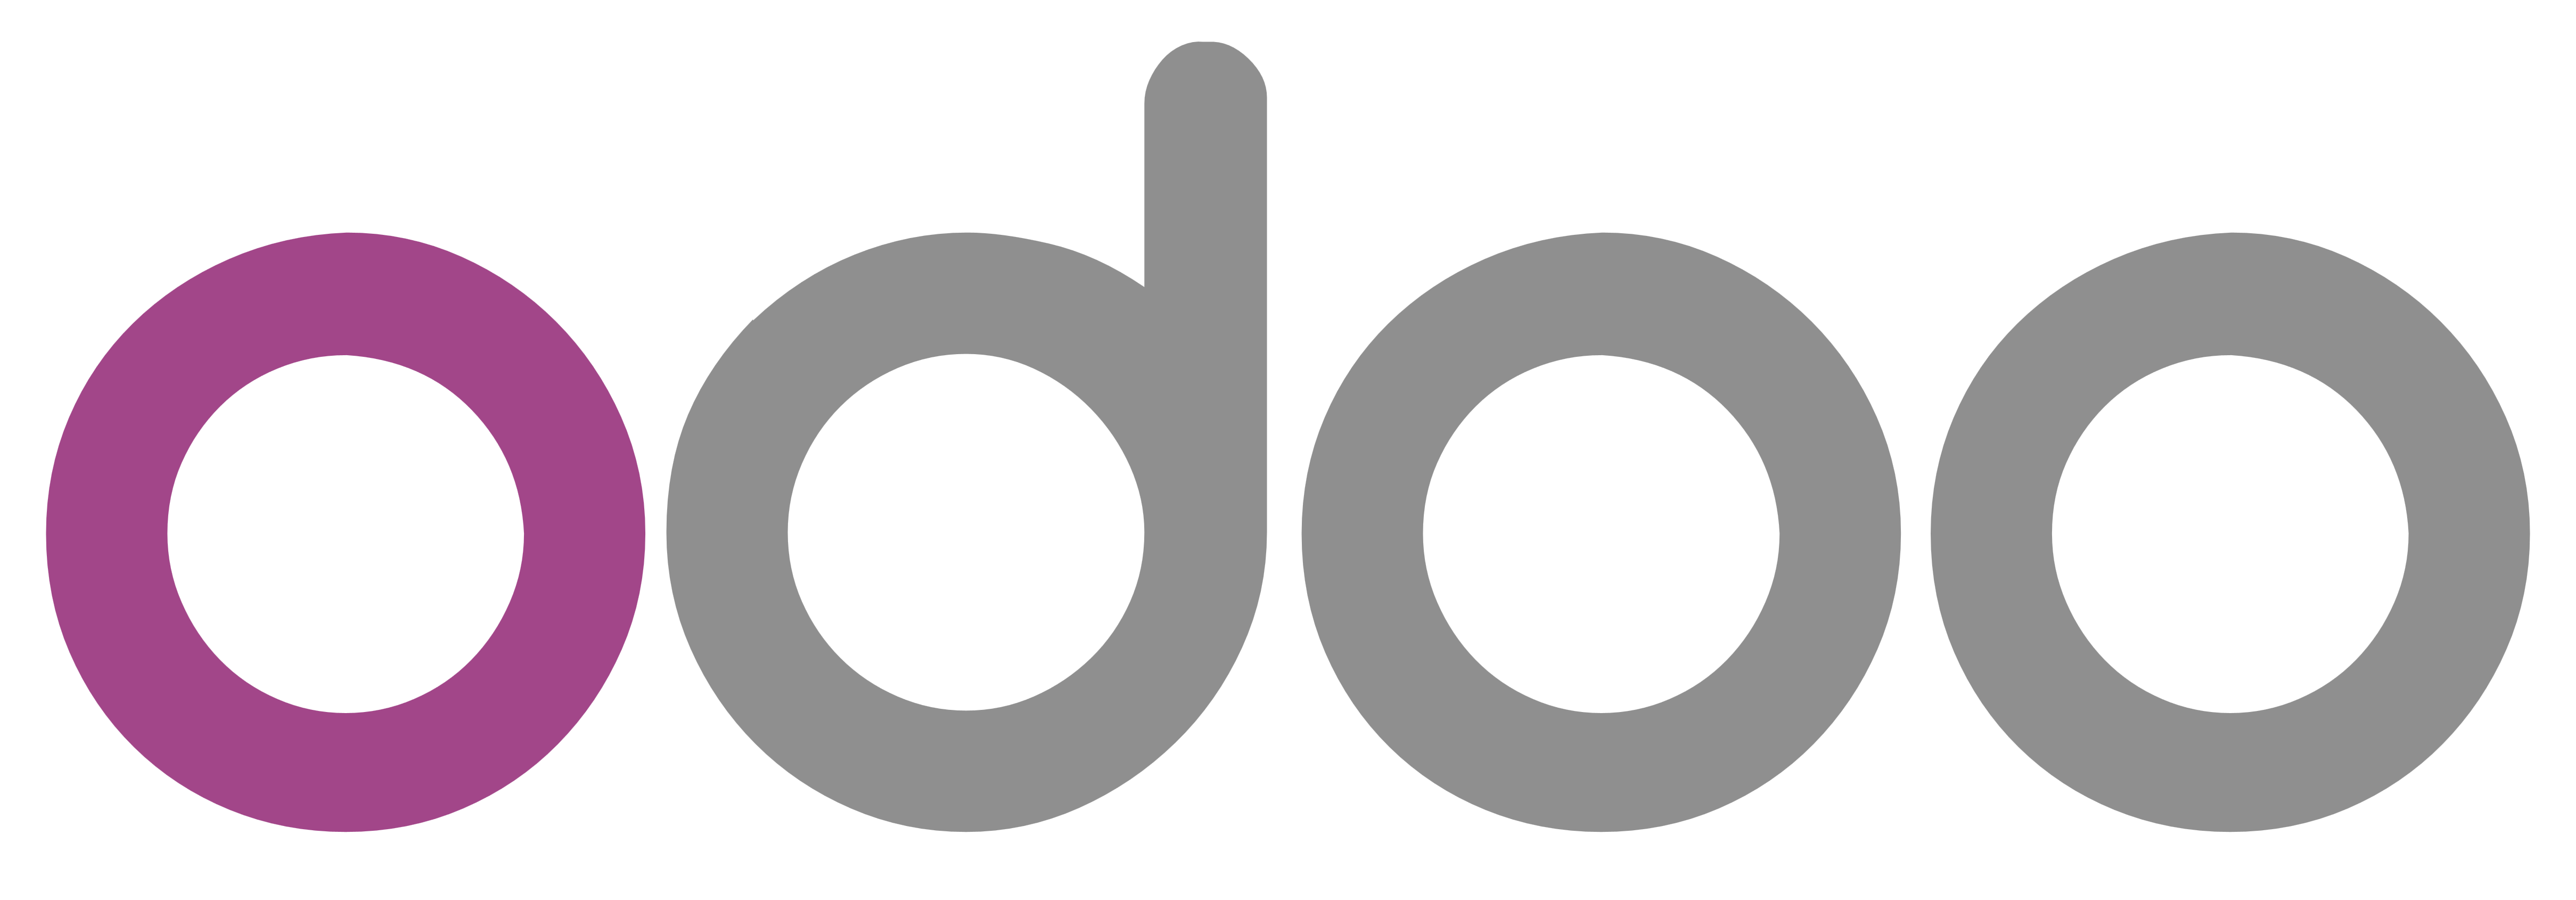 Odoo – Logos Download